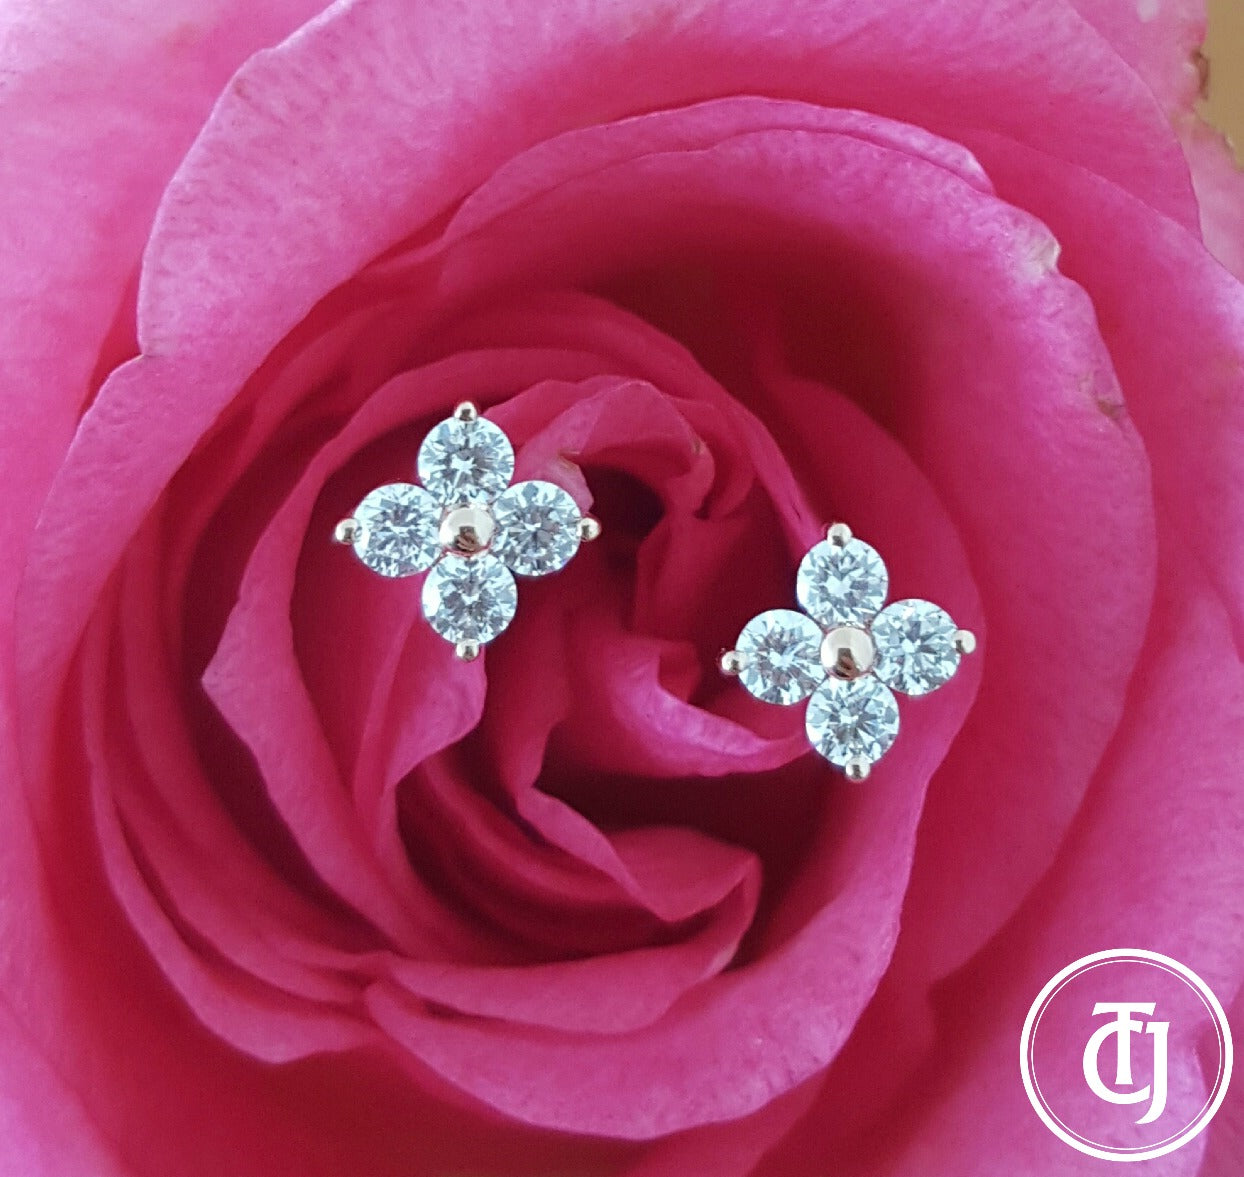 0.24tcw G/SI1 Diamond Stud 'Florette' Earrings in 18k 18ct Rose Gold by CTJ